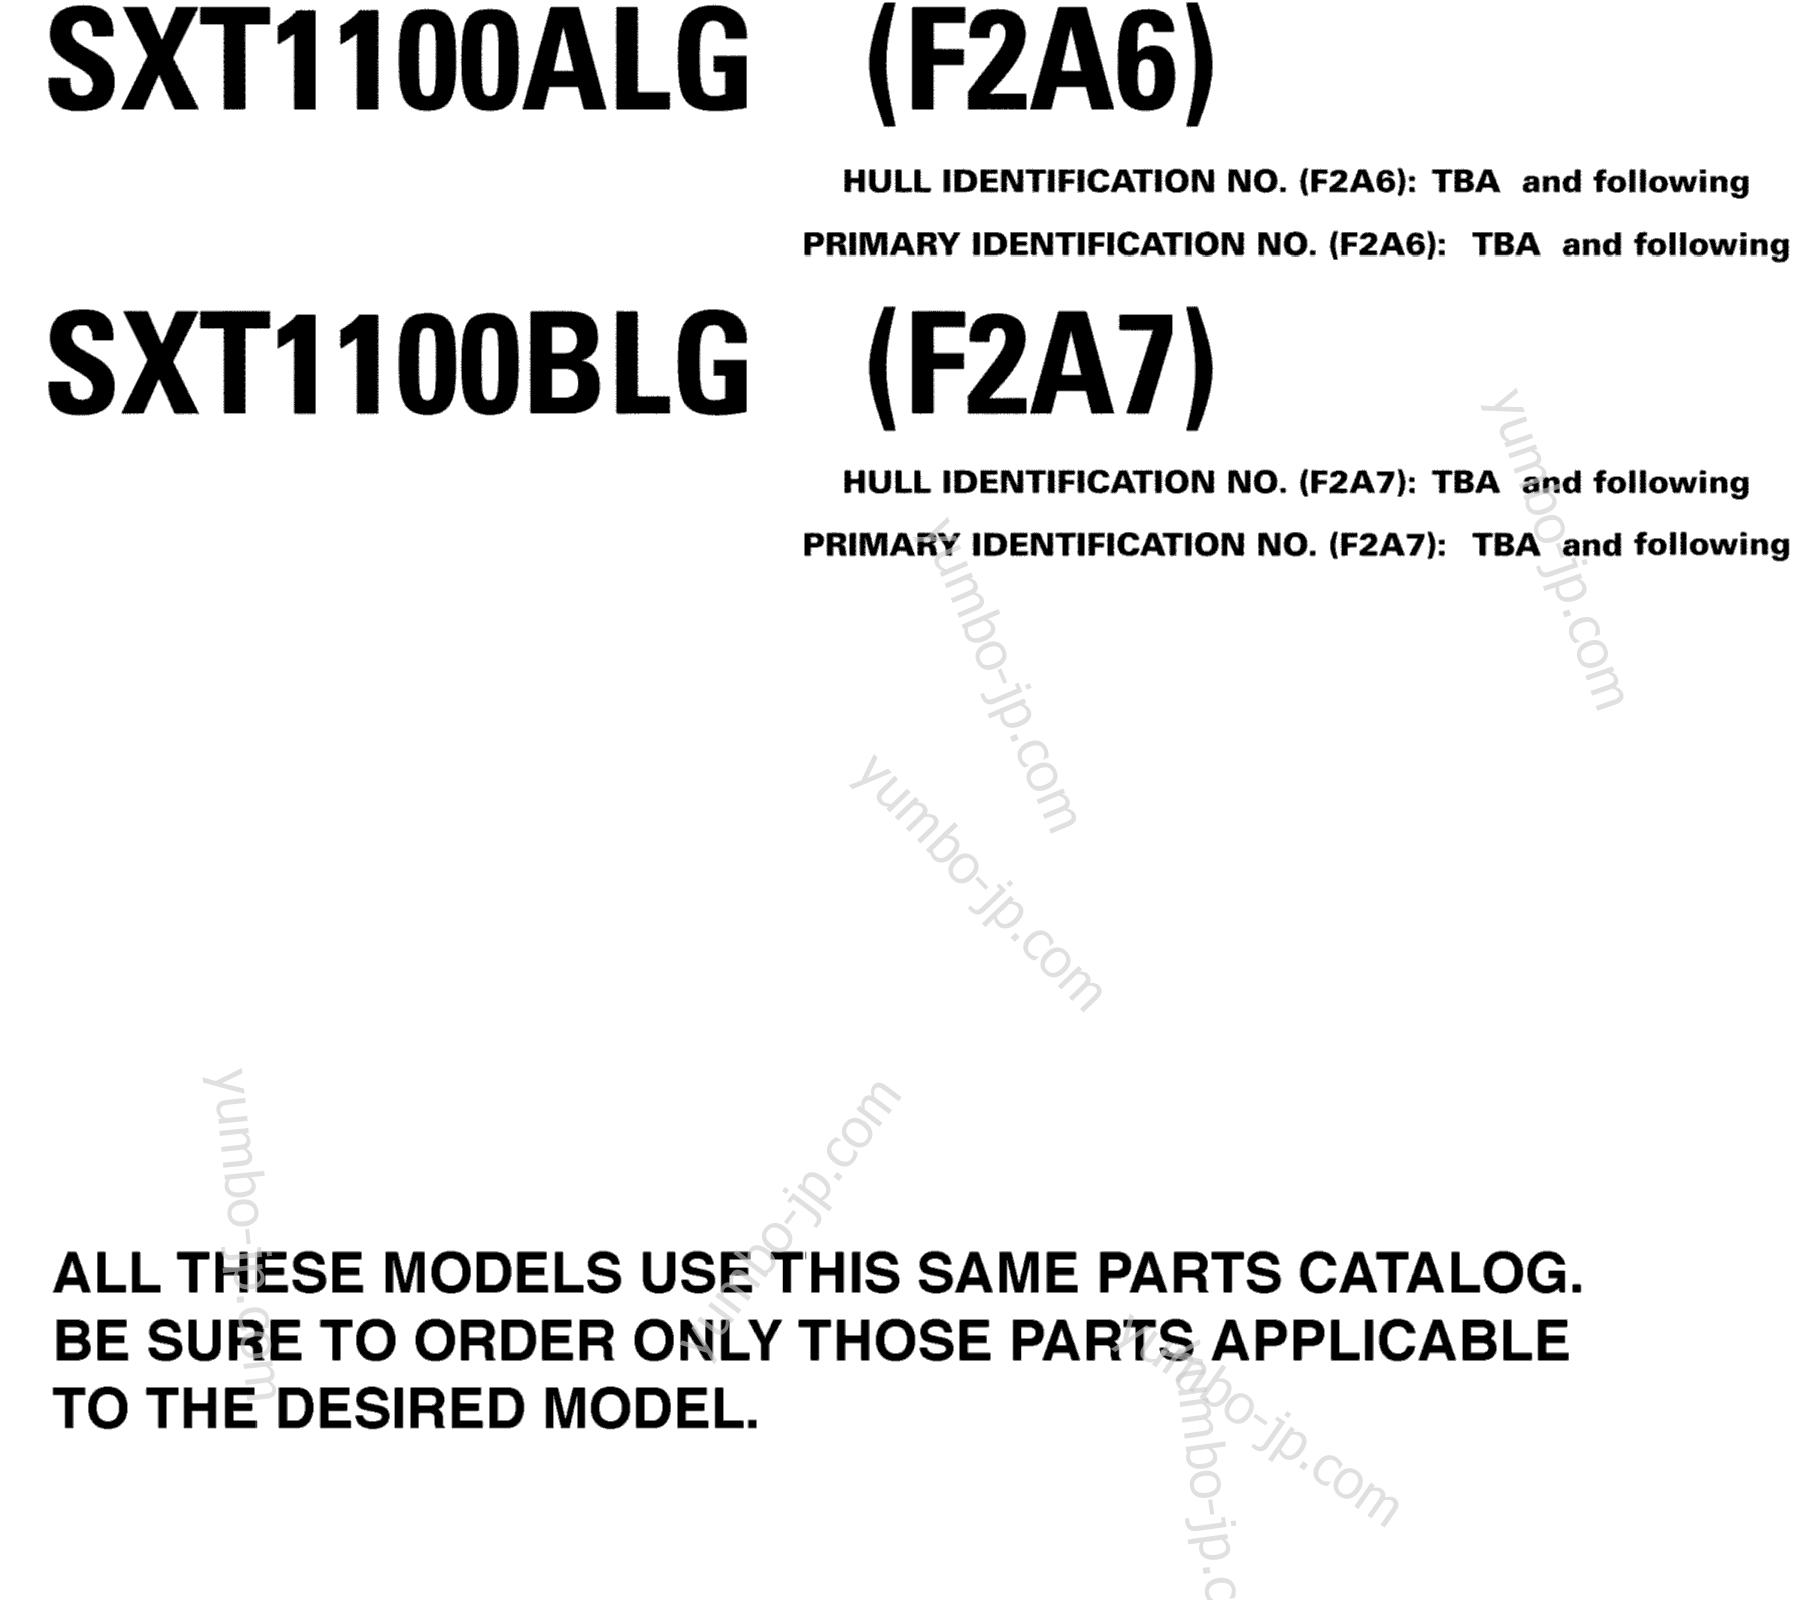 Models In This Catalog for boats YAMAHA AR230 HO CA & NY (SXT1100ALG) CA 2008 year